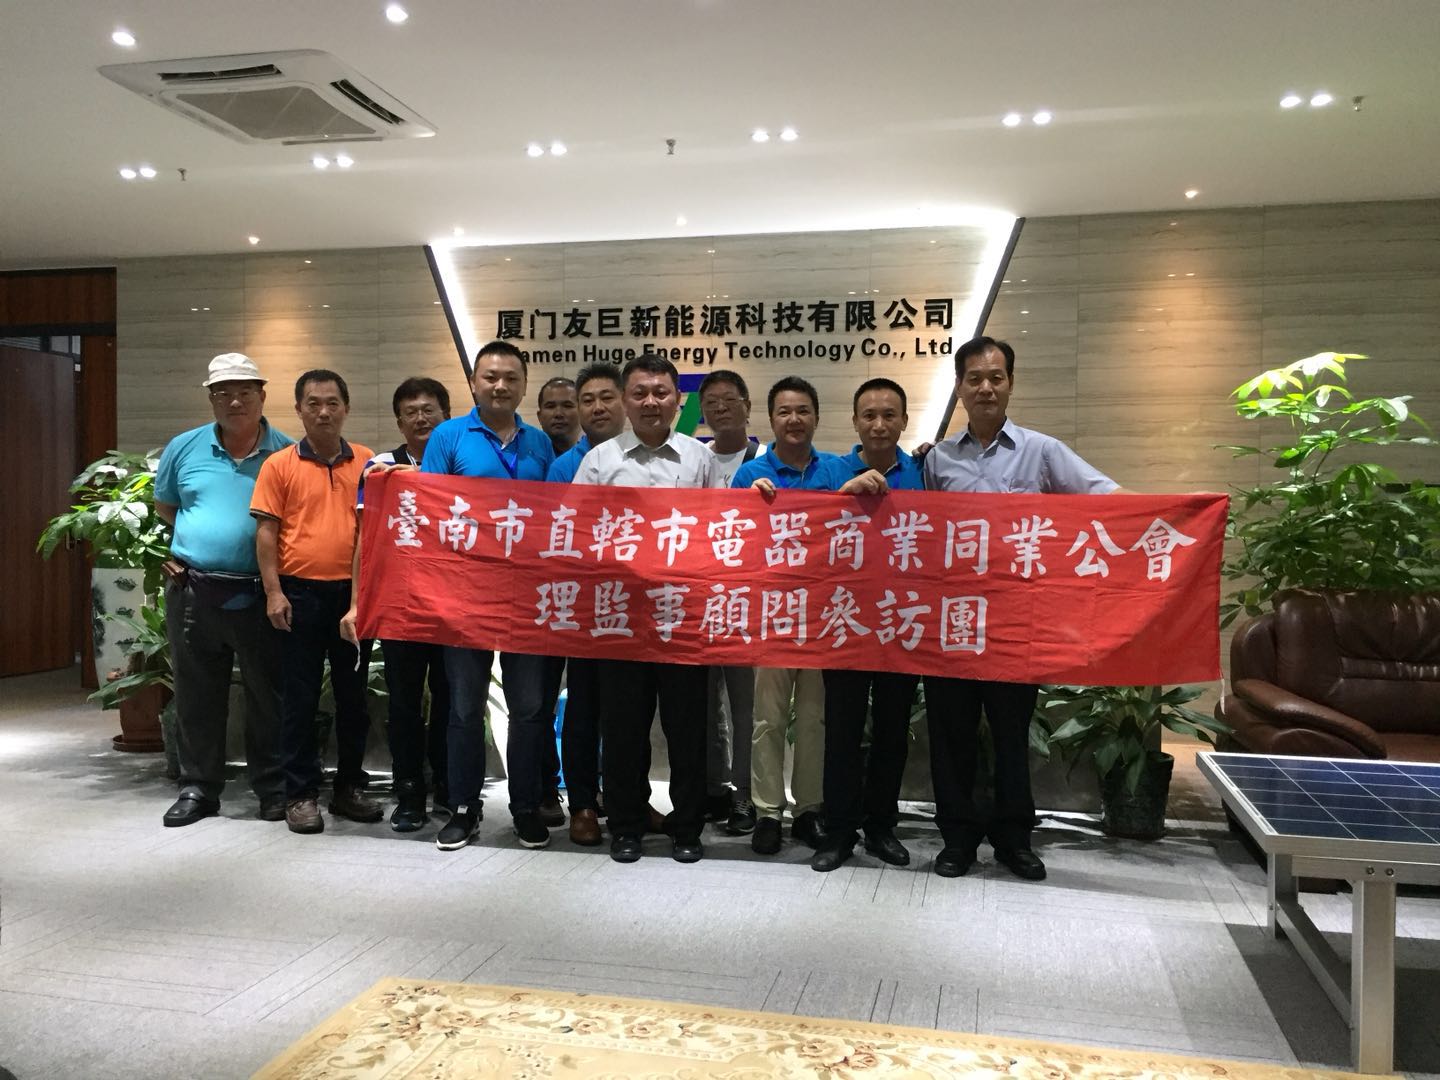 جمعية رجال أعمال الأجهزة الكهربائية في تايوان ، وقادة لجنة حماية البيئة الخضراء في تايوان